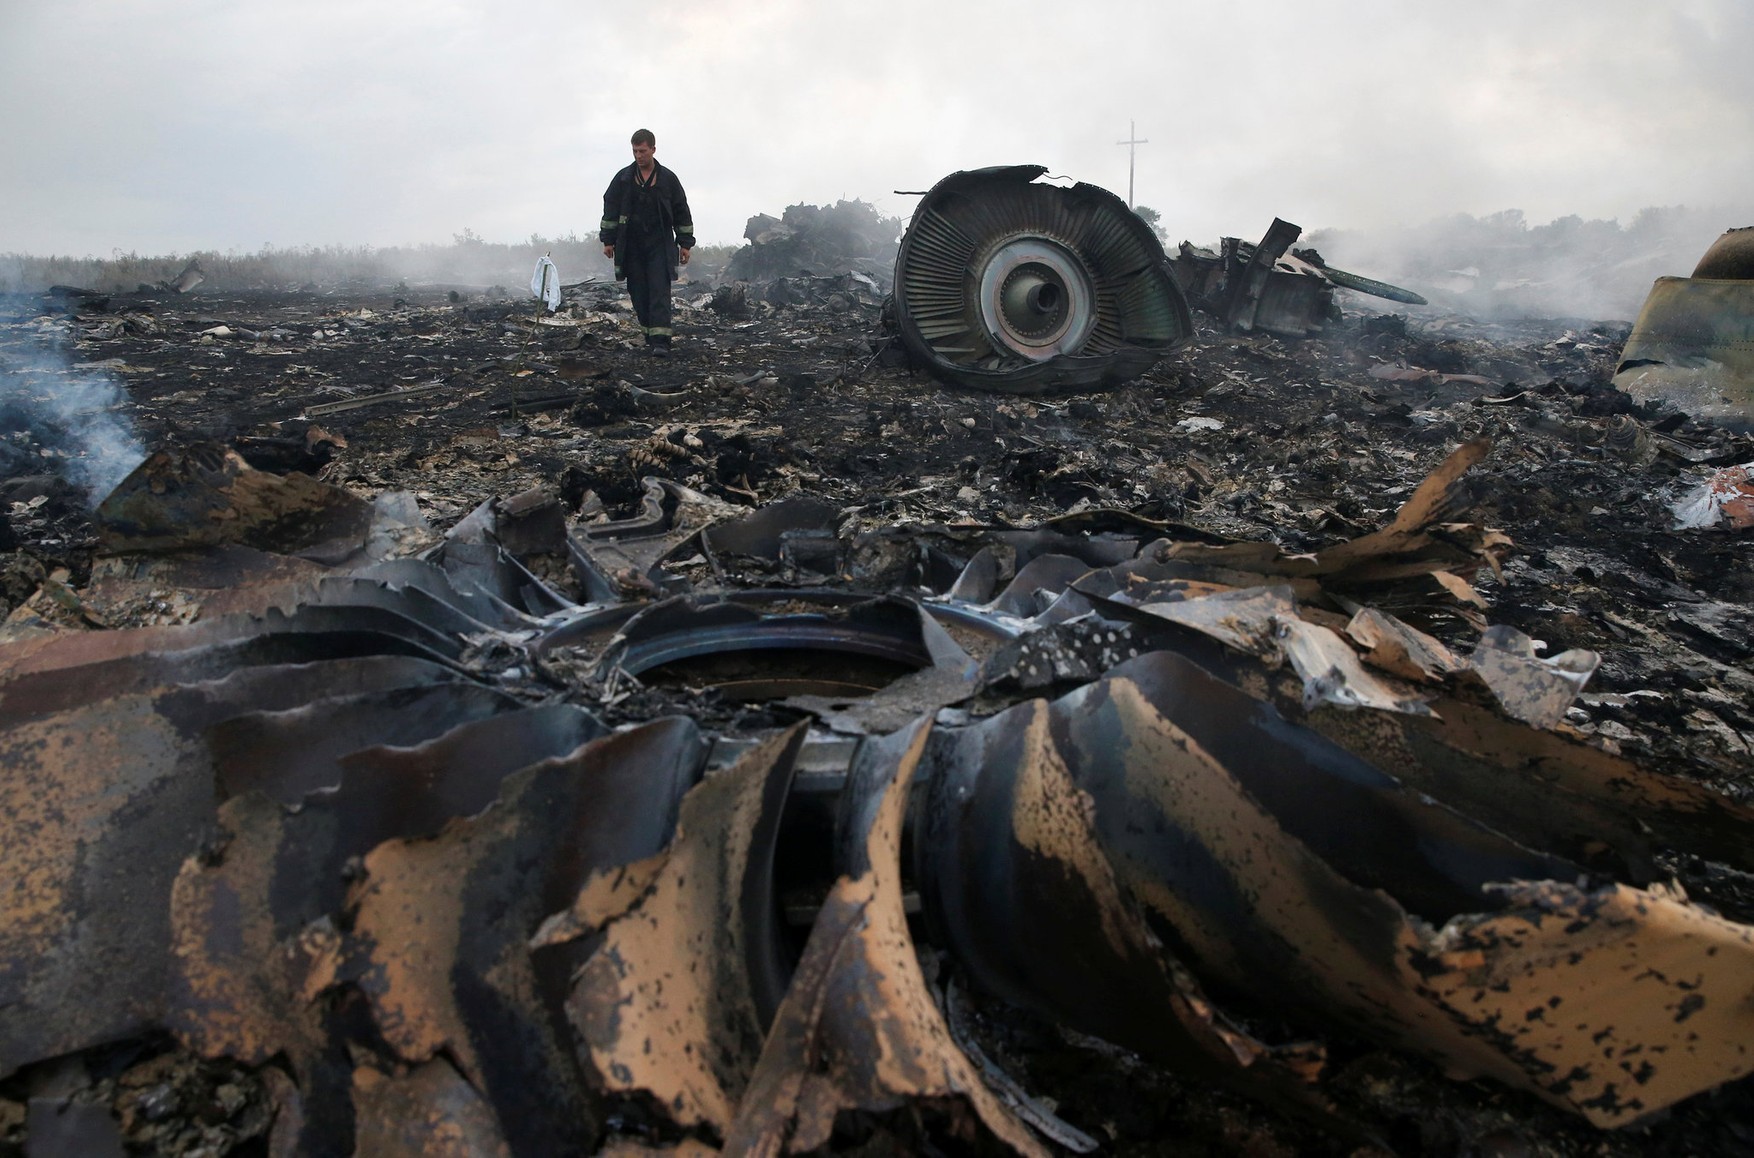 RTL News: Адвокатів жертв MH17 залякали під час судового процесу у Нідерландах. За цим може стояти Росія